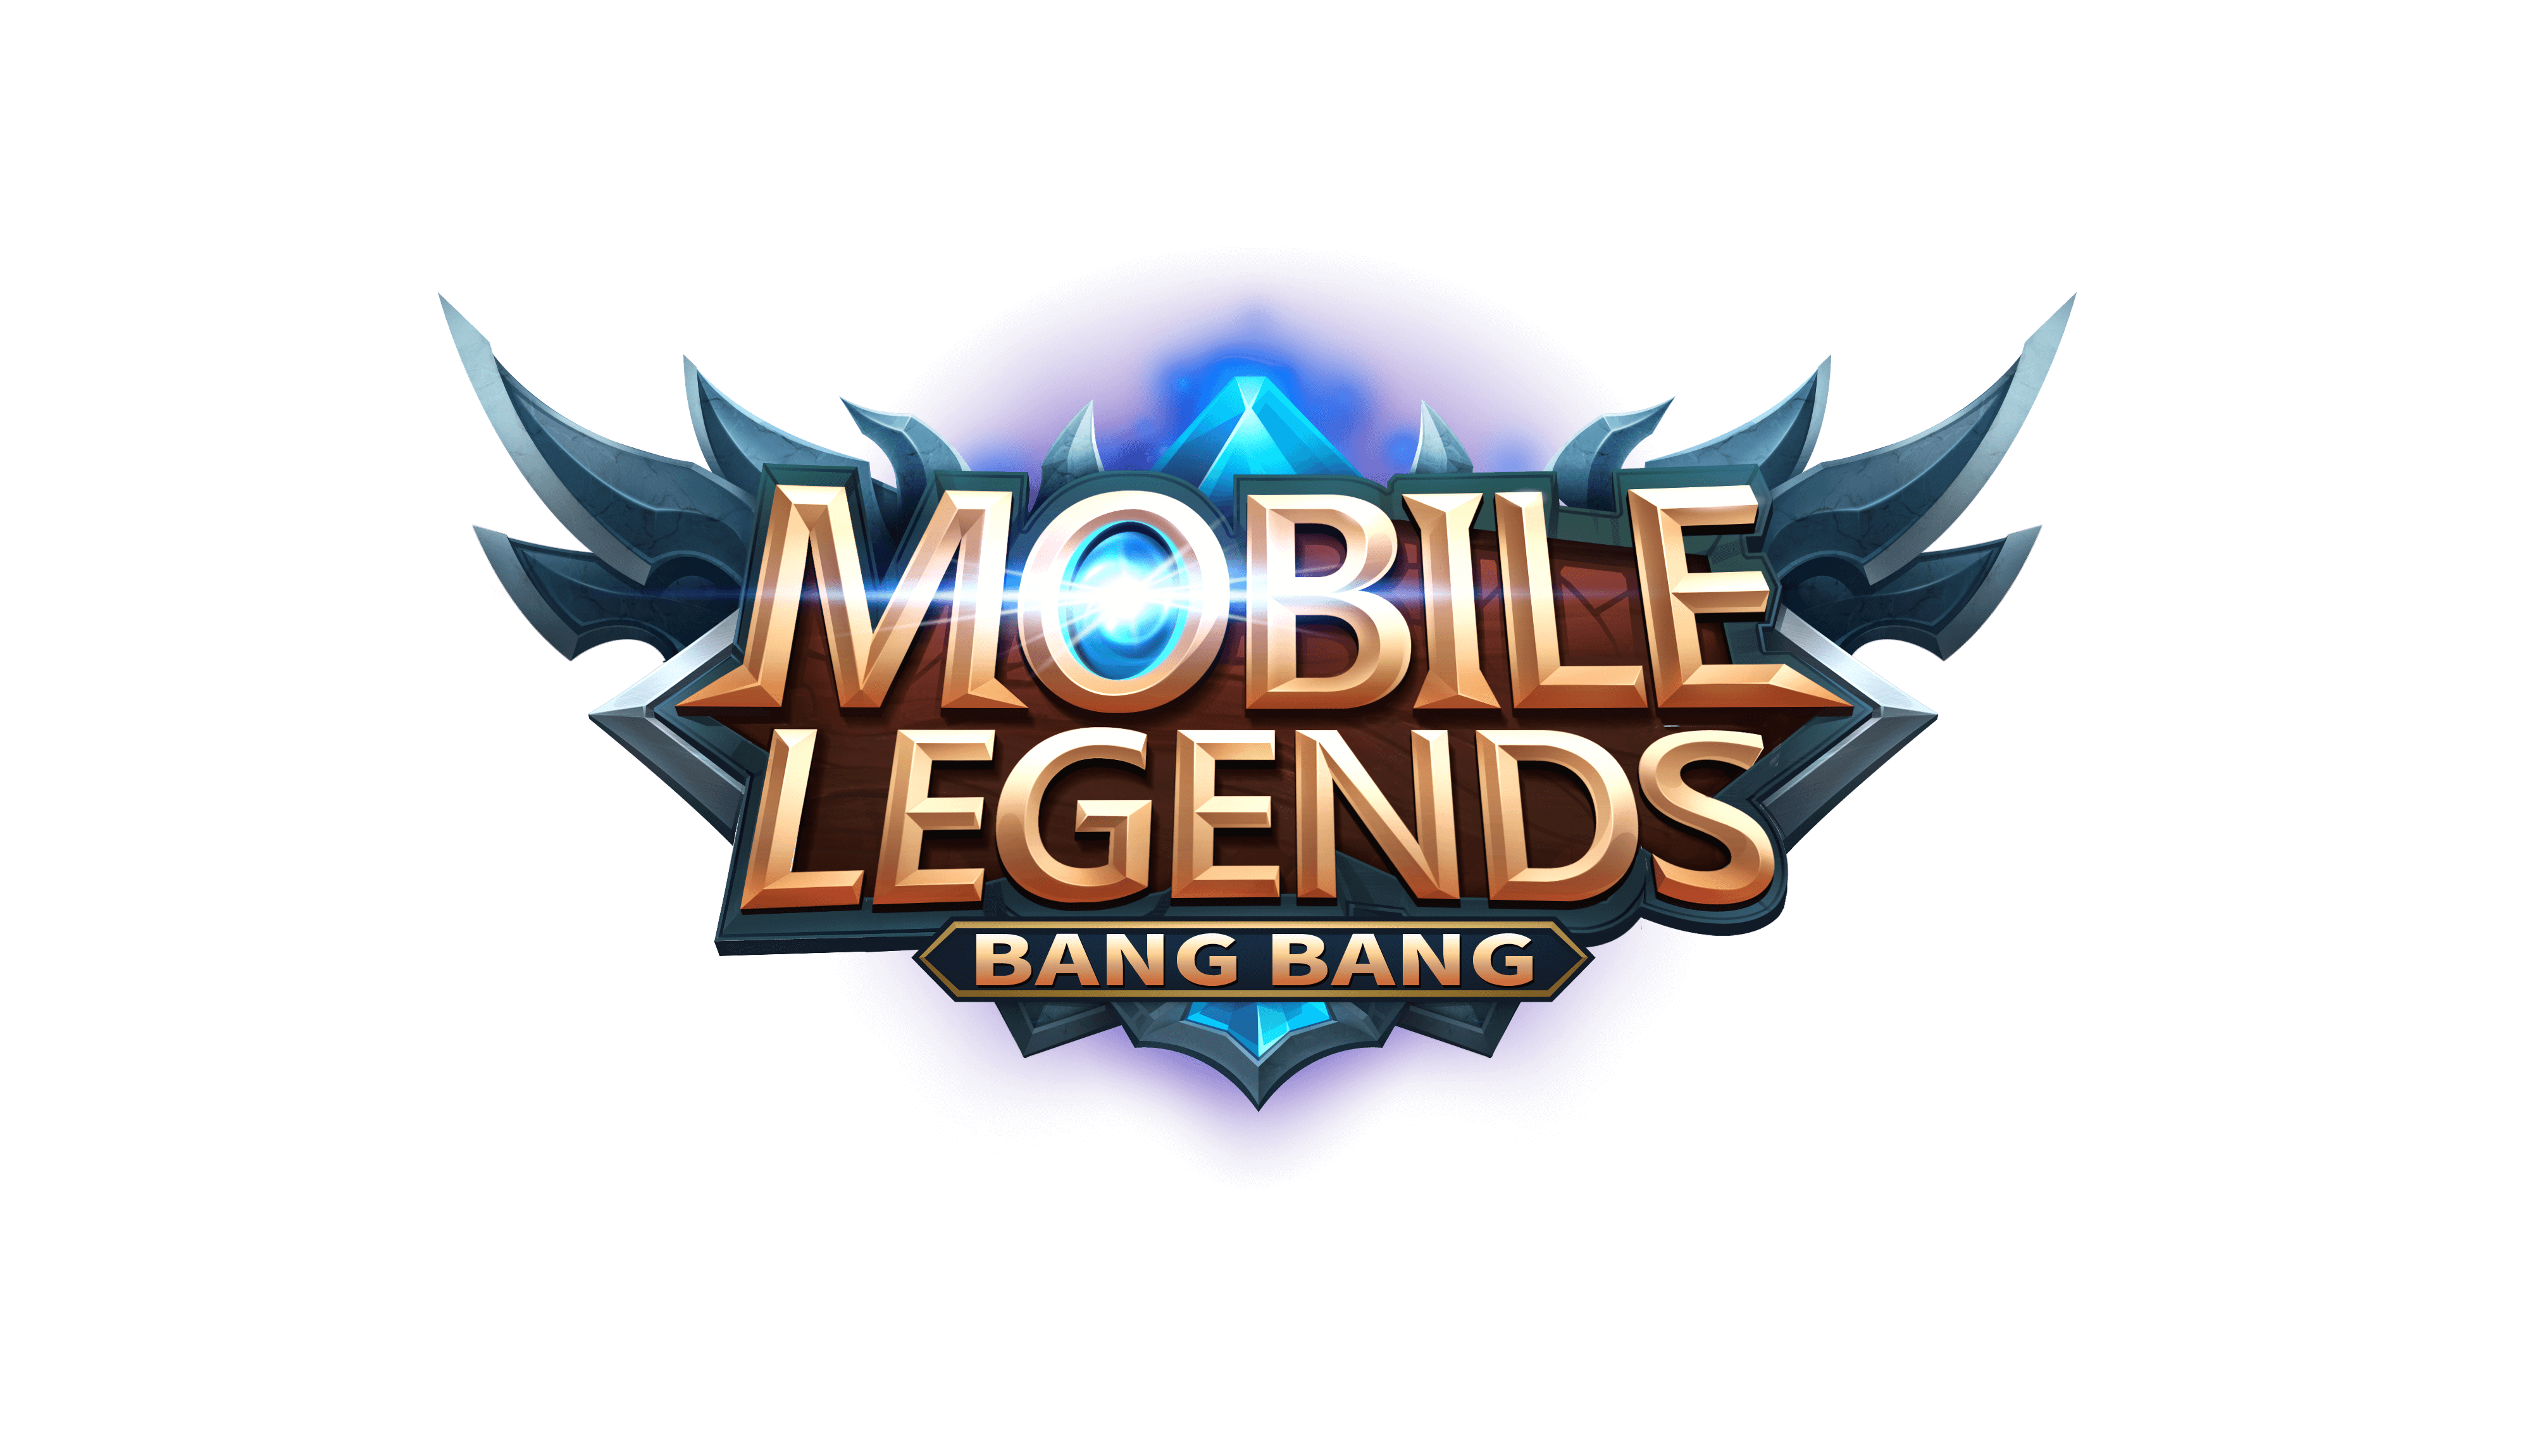 Mobile Legend Logo PNG - Free Download Mobile Legends images - Free